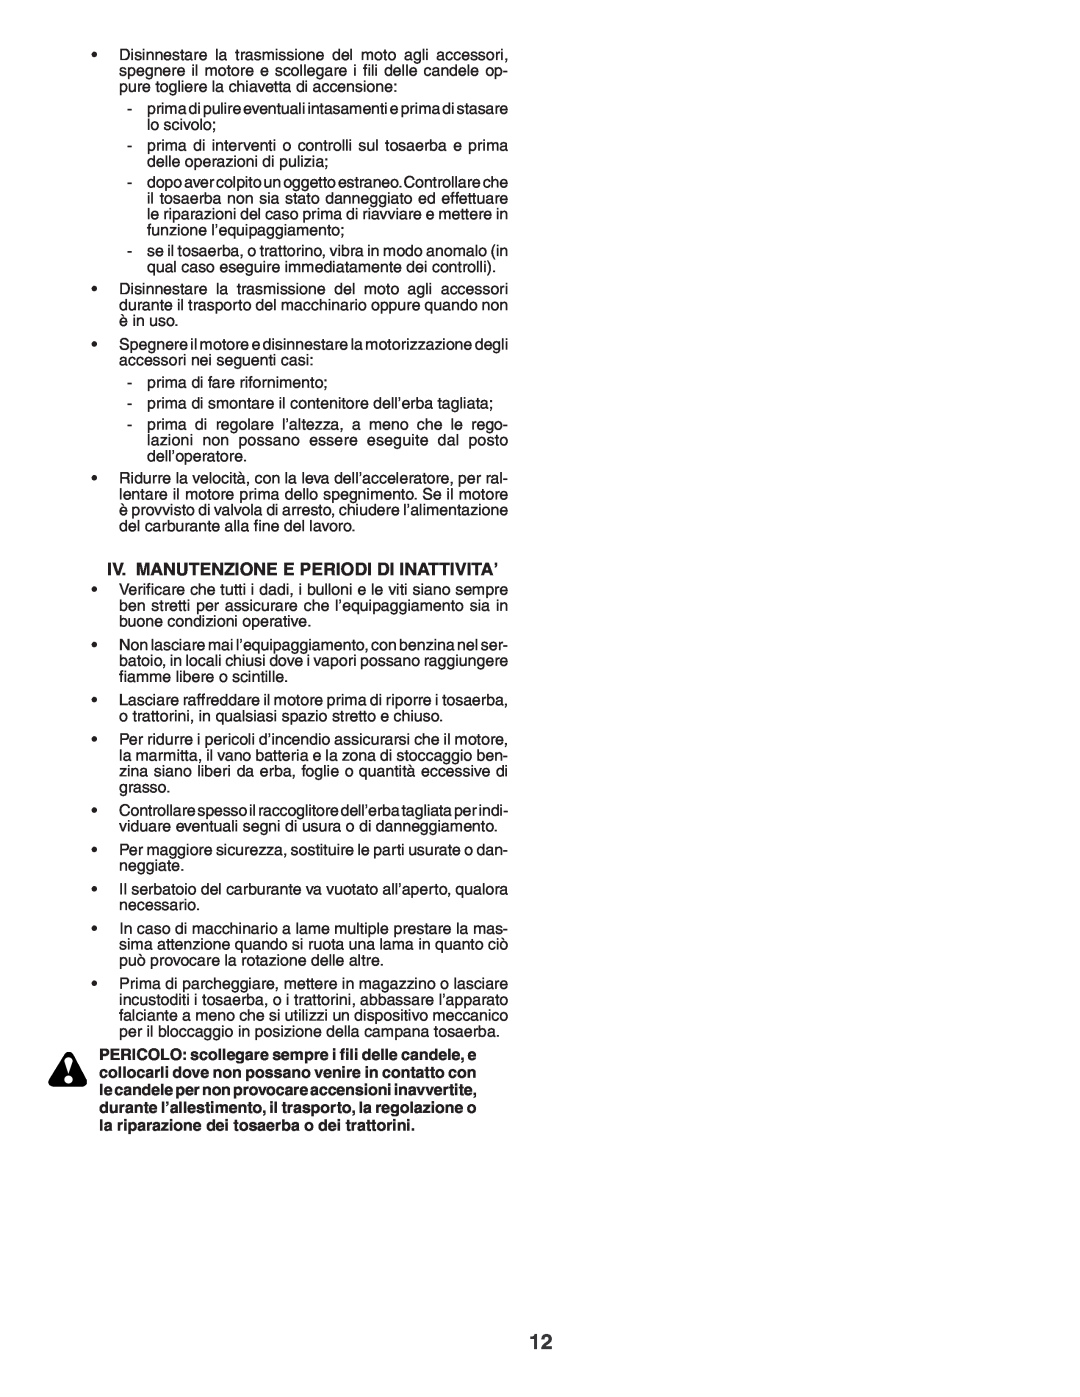 Husqvarna YTH180XP instruction manual Iv. Manutenzione E Periodi Di Inattivita’ 